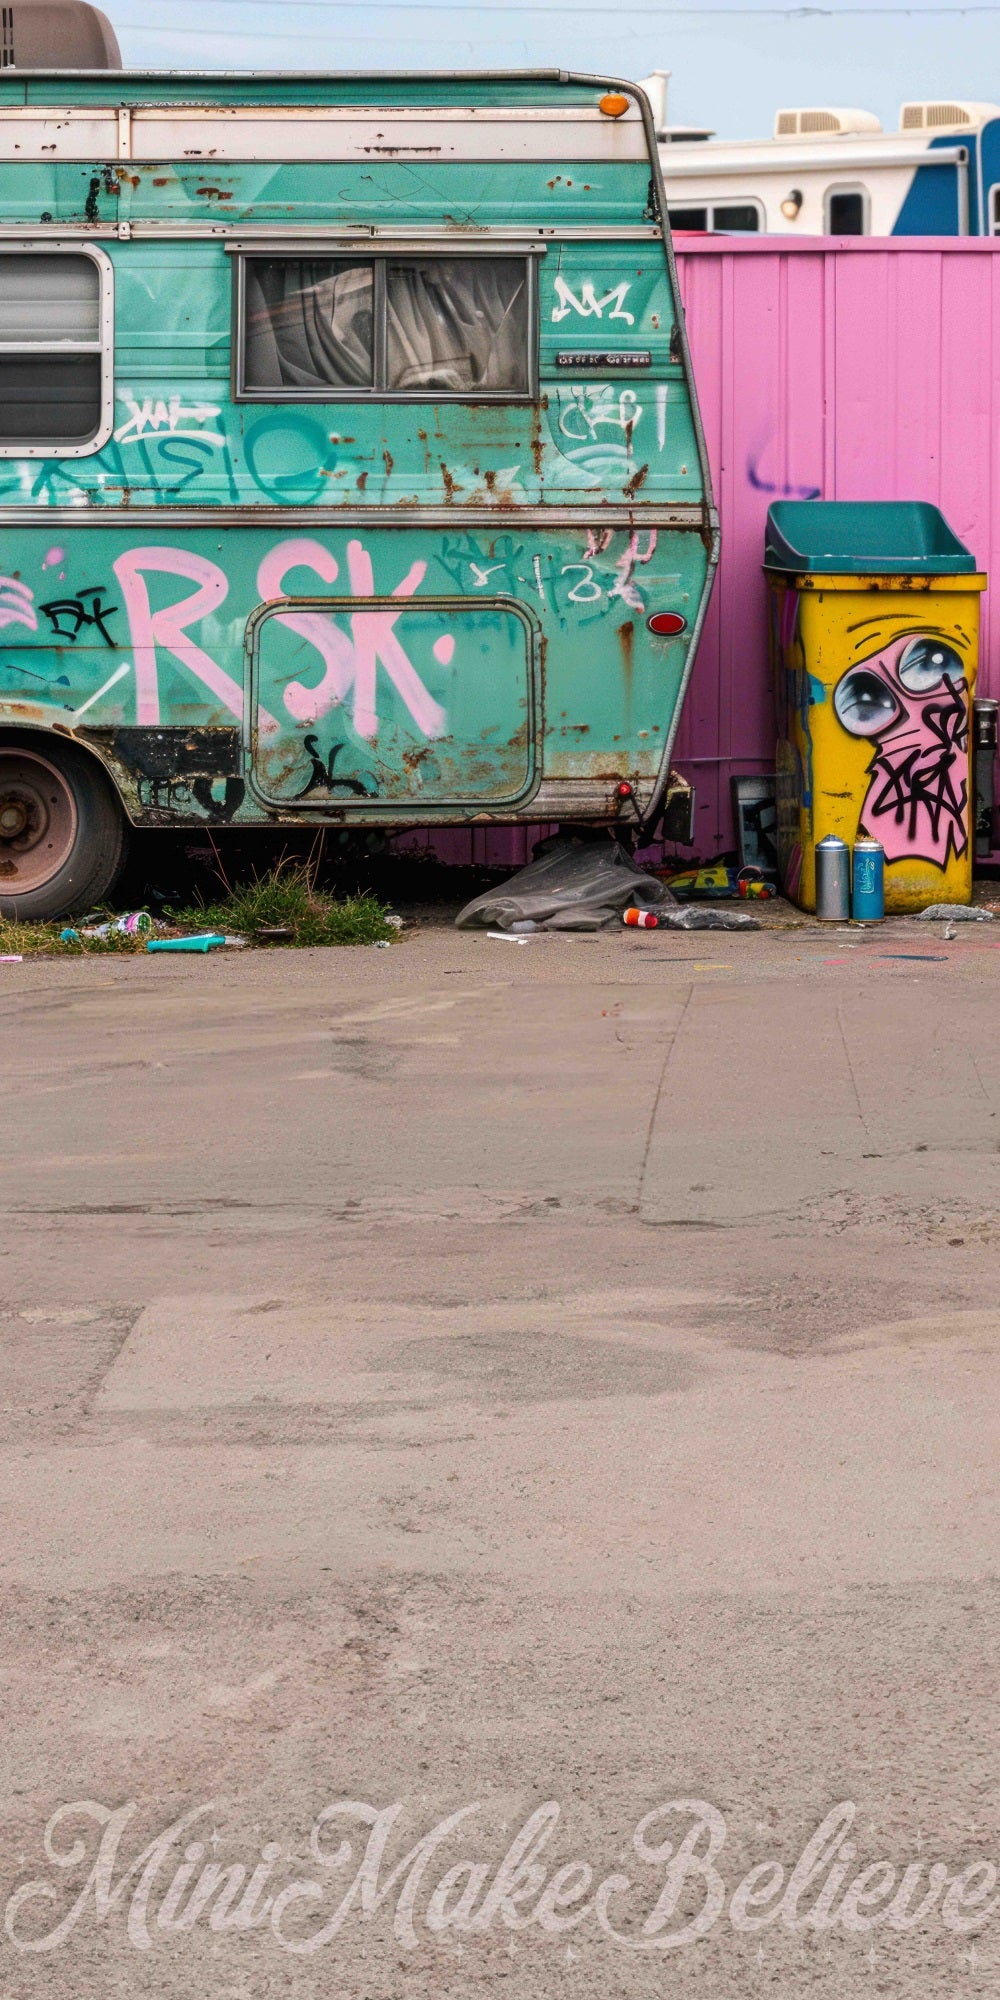 Vintage Gebroken Kleurrijke Graffiti Groene Vrachtwagenachtergrond Ontworpen door Mini MakeBelieve